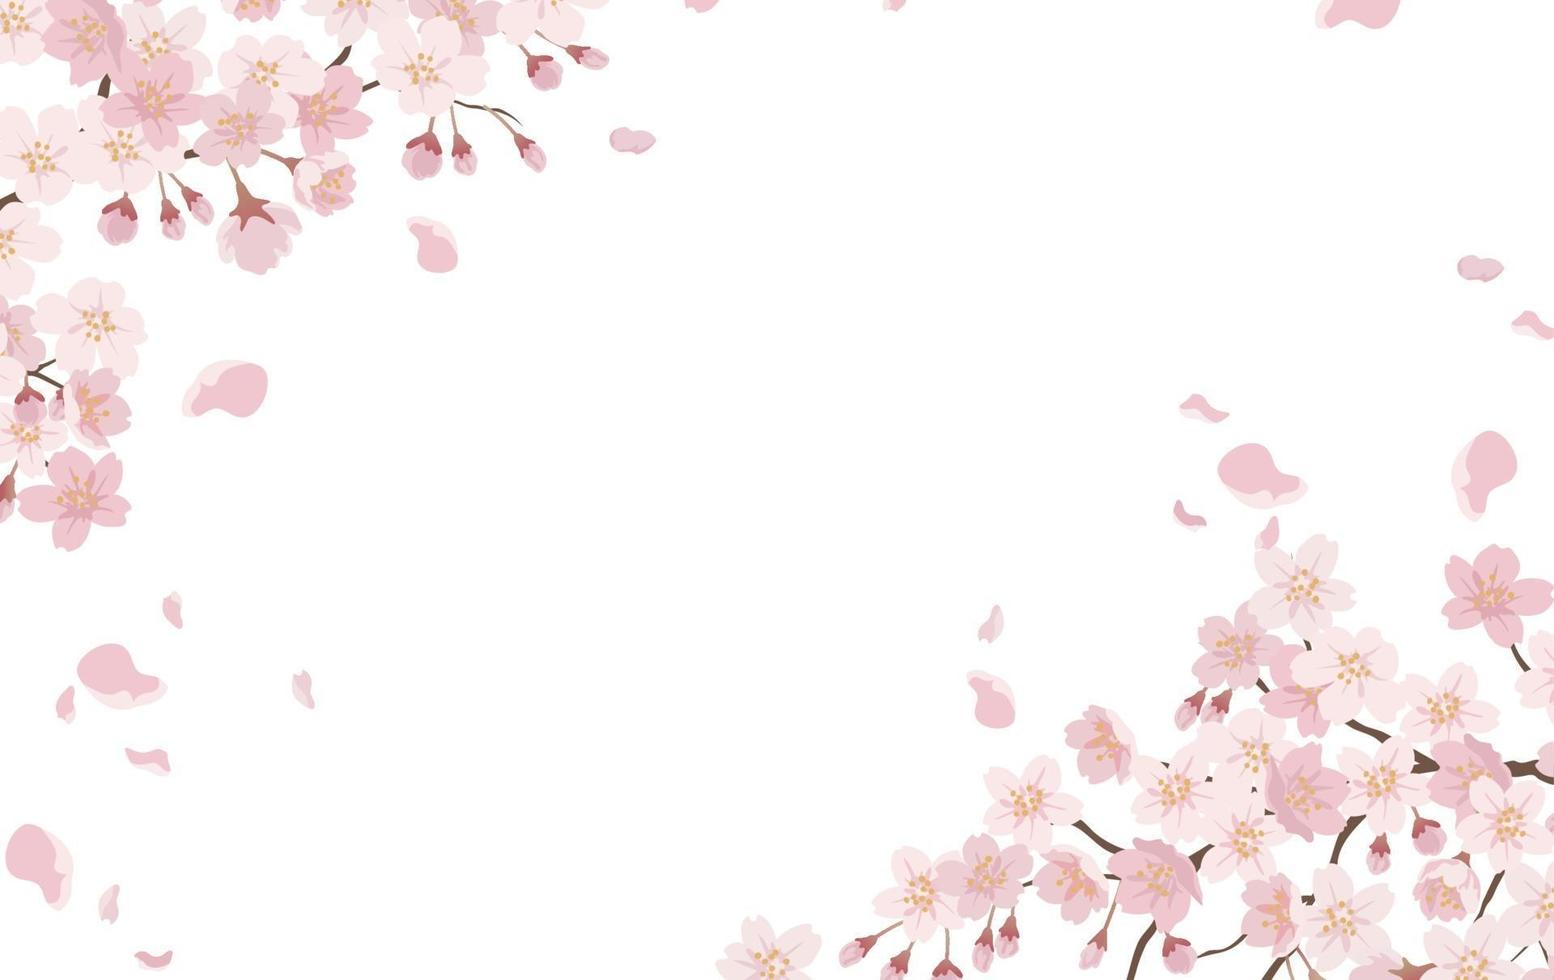 fond floral avec des fleurs de cerisier en pleine floraison isolé sur fond blanc. vecteur